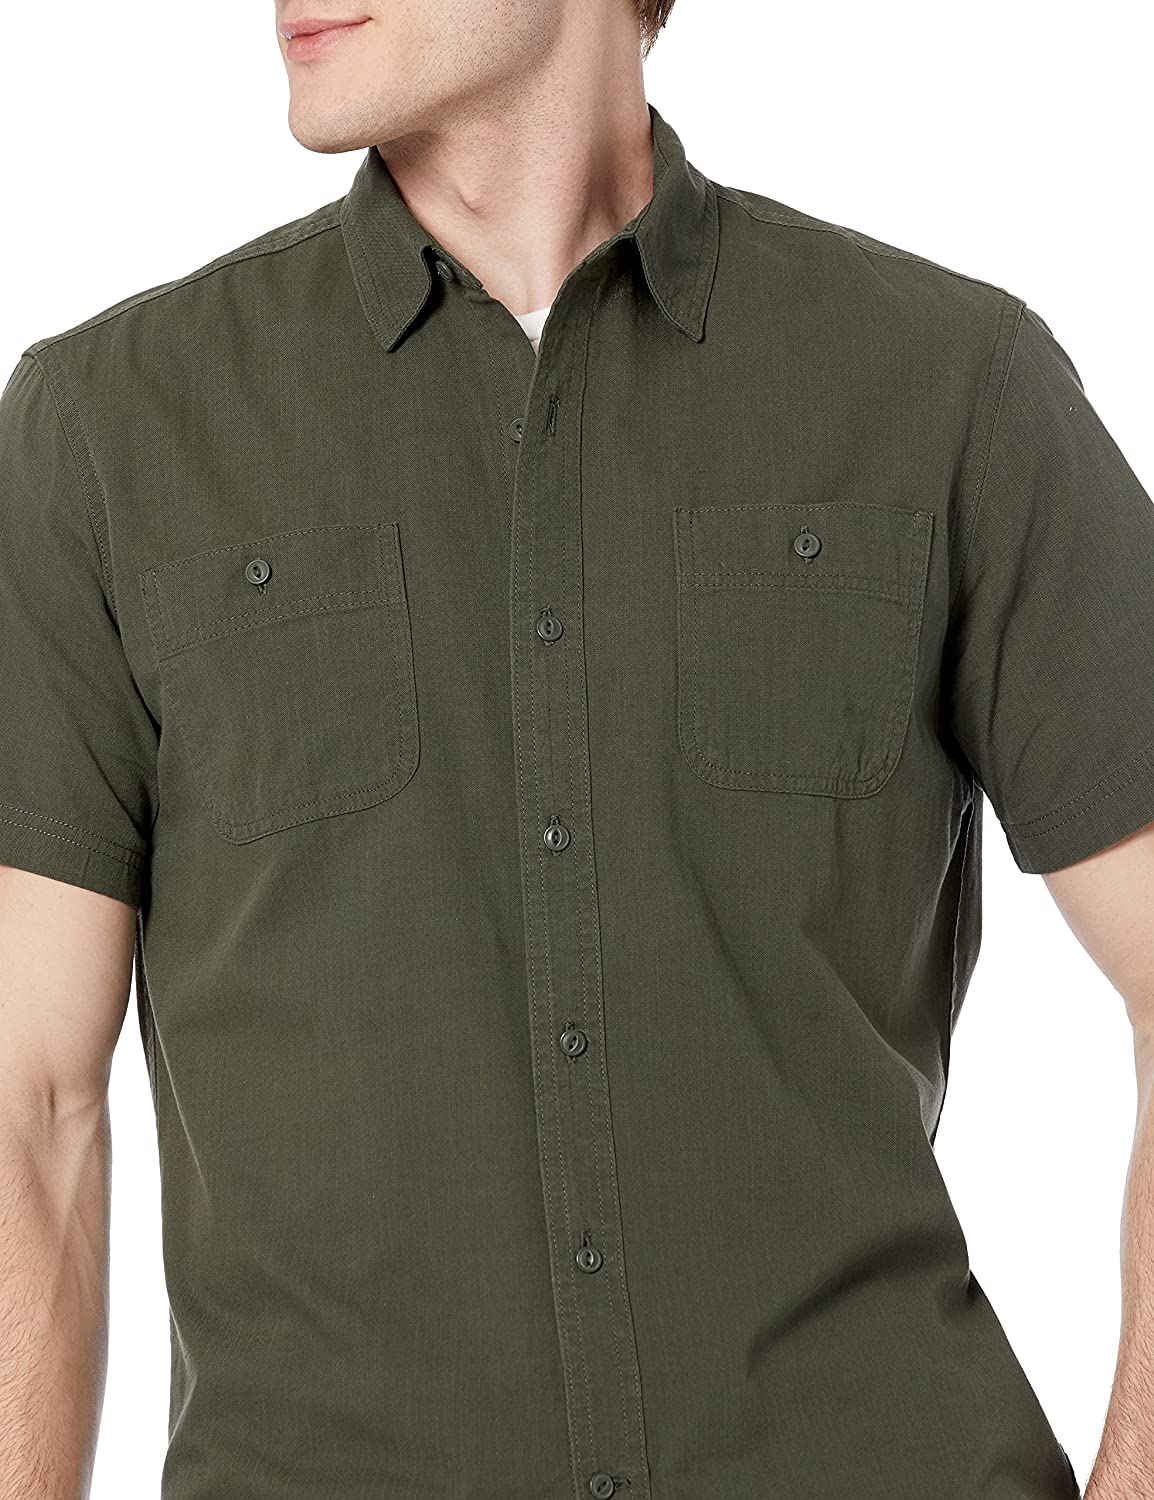 Essentials Men's Short-Sleeve Shirt